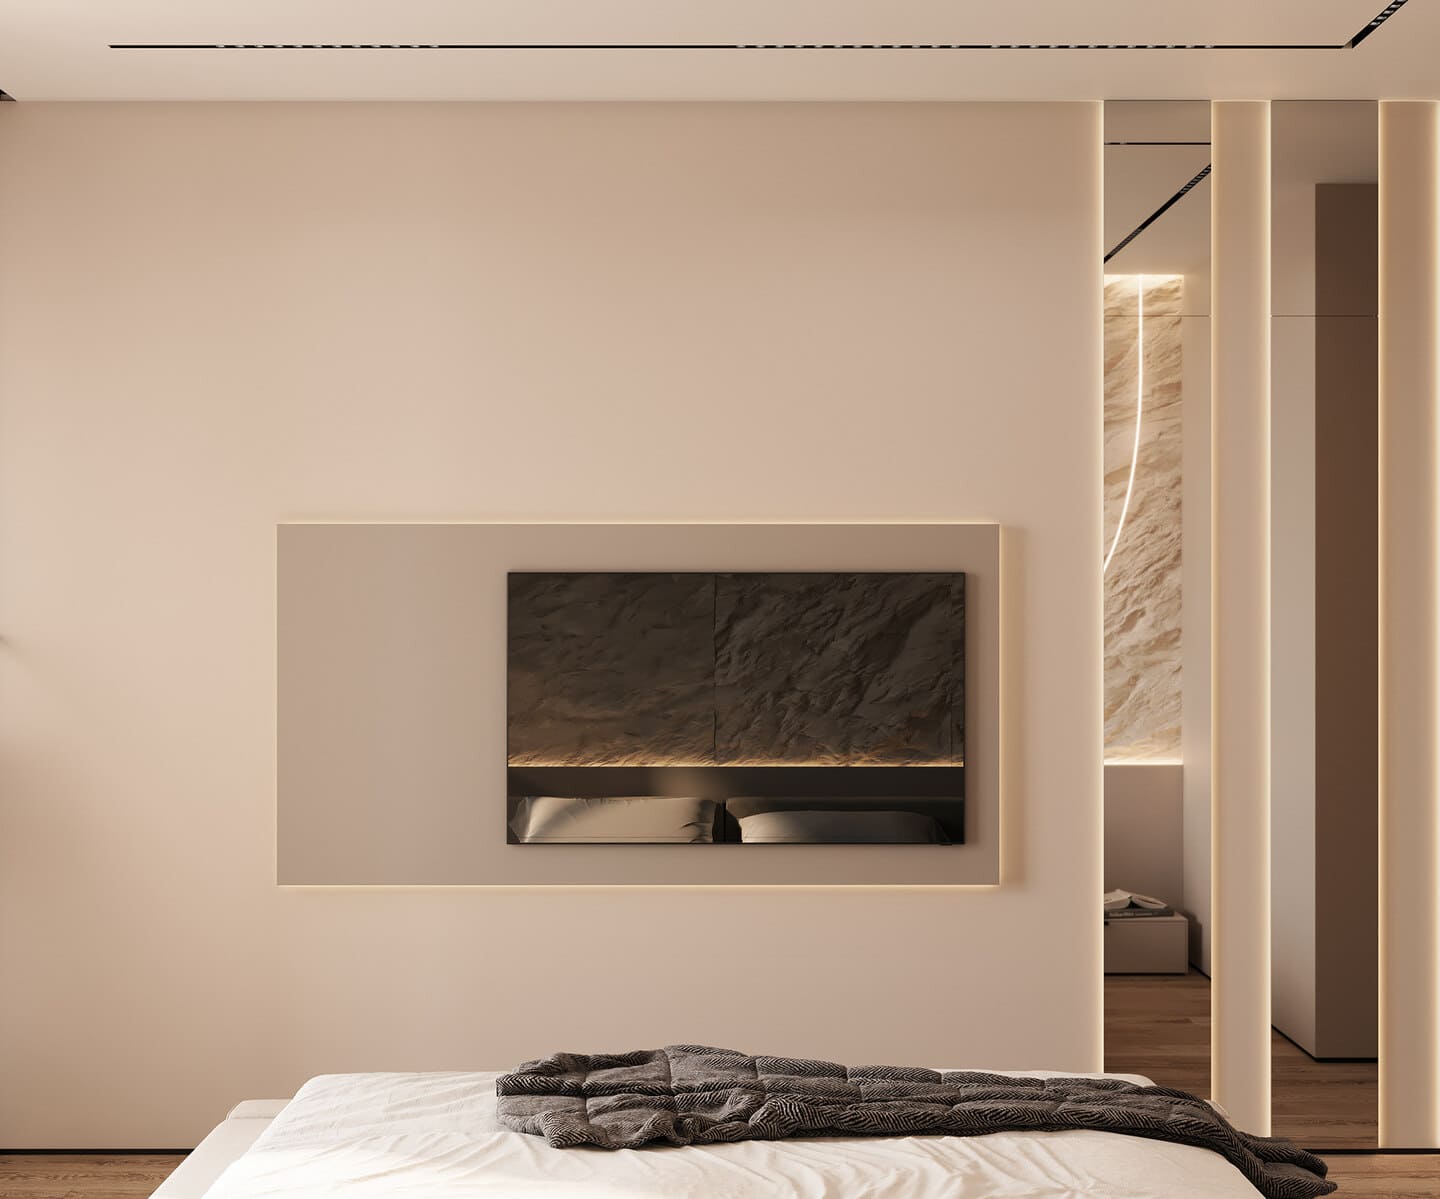 Просторная минималистичная квартира в теплых тонах, спальня, фото 36